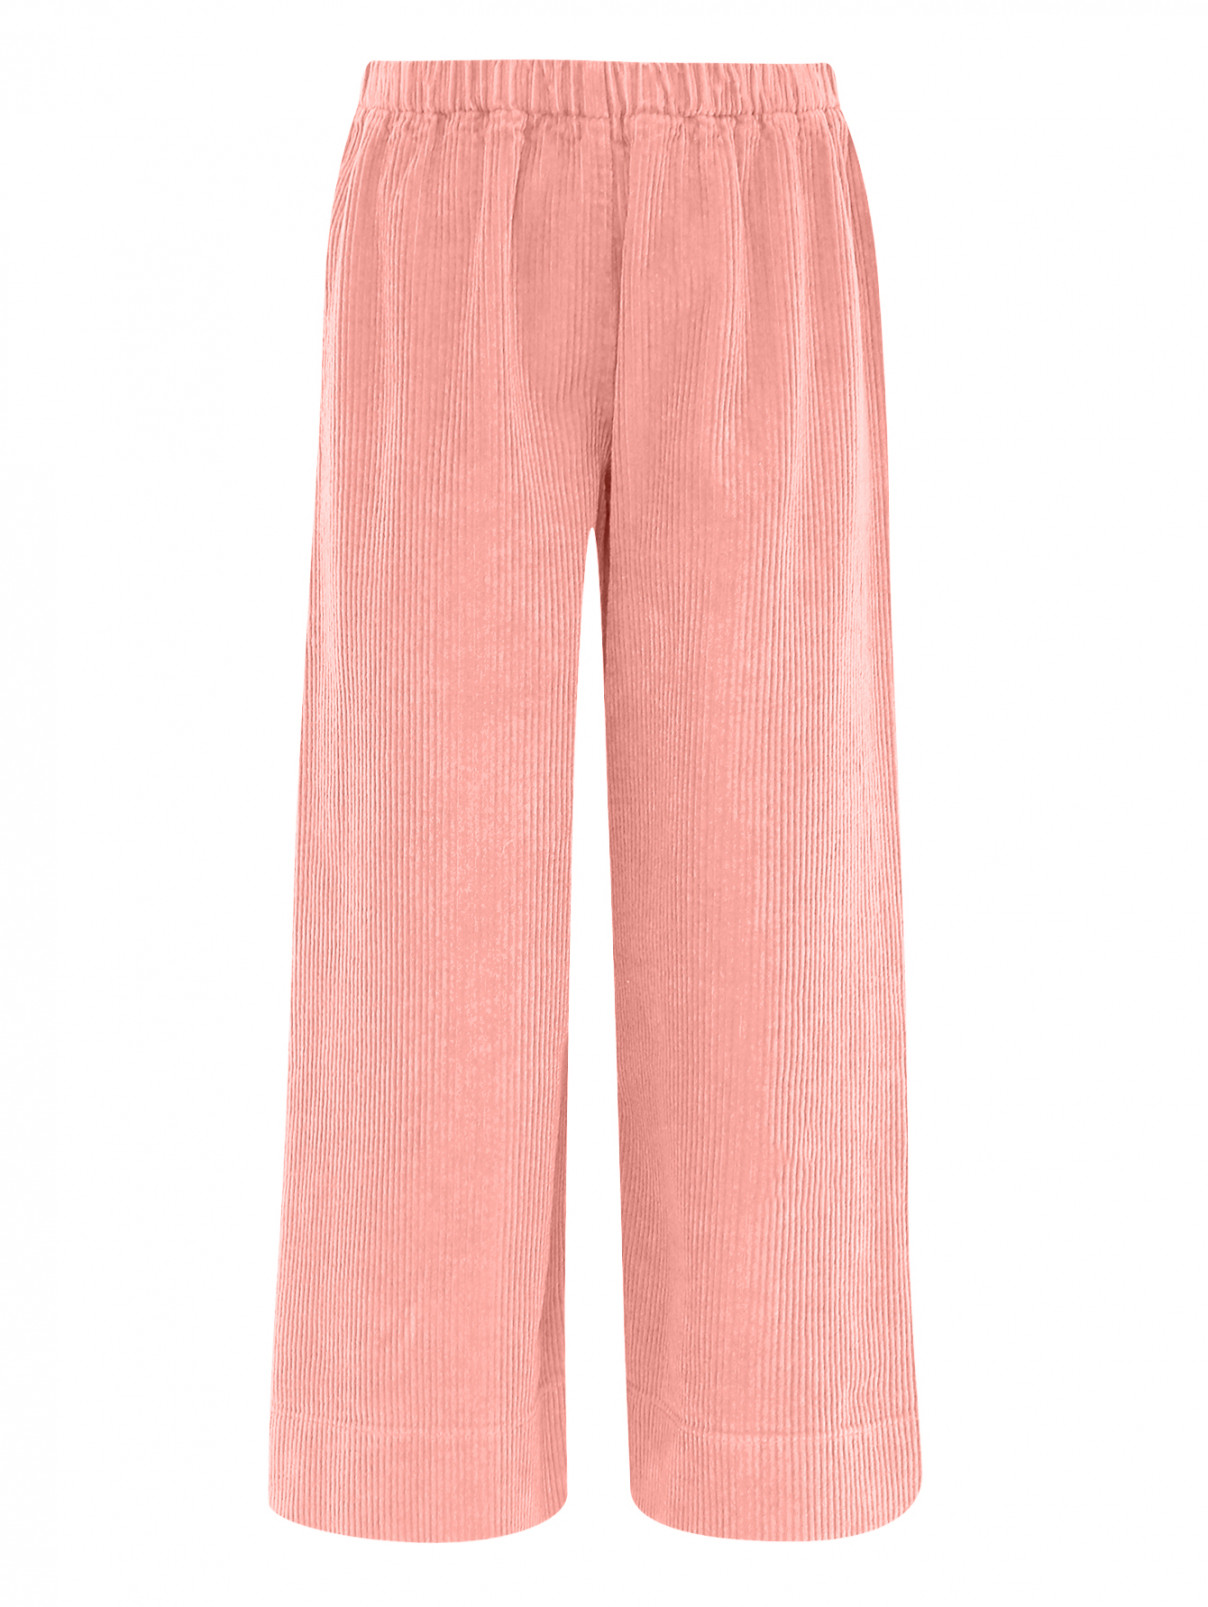 Вельветовые брюки из хлопка Il Gufo  –  Общий вид  – Цвет:  Розовый